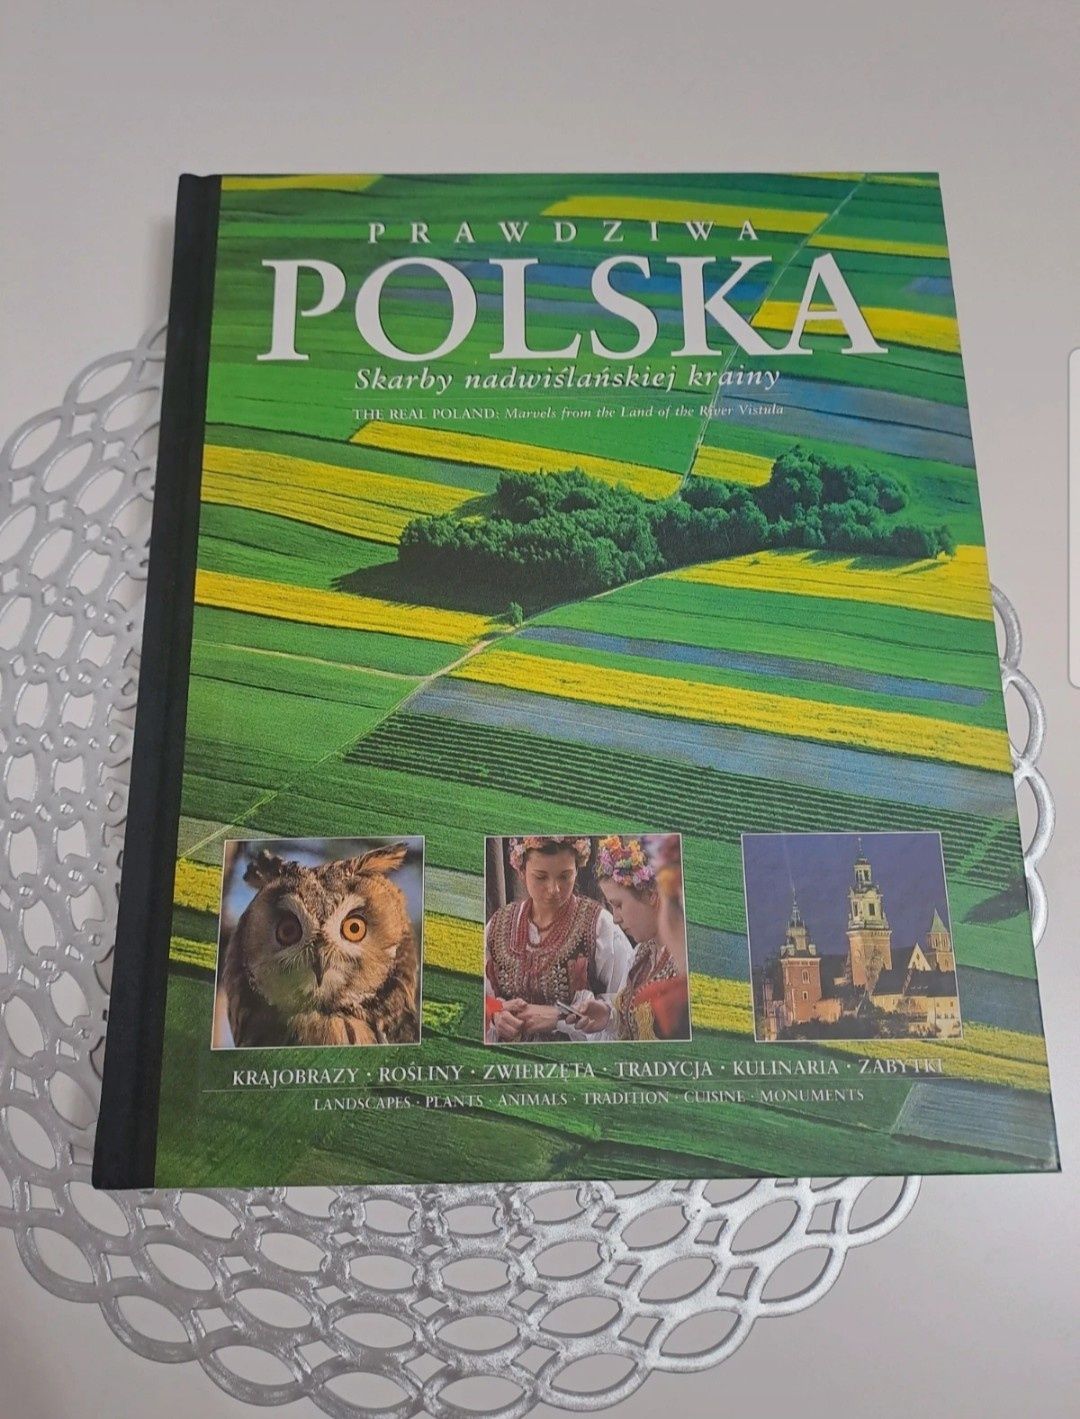 Prawdziwa Polska skarby nadwiślańskiej krainy

Duża książka w twardej